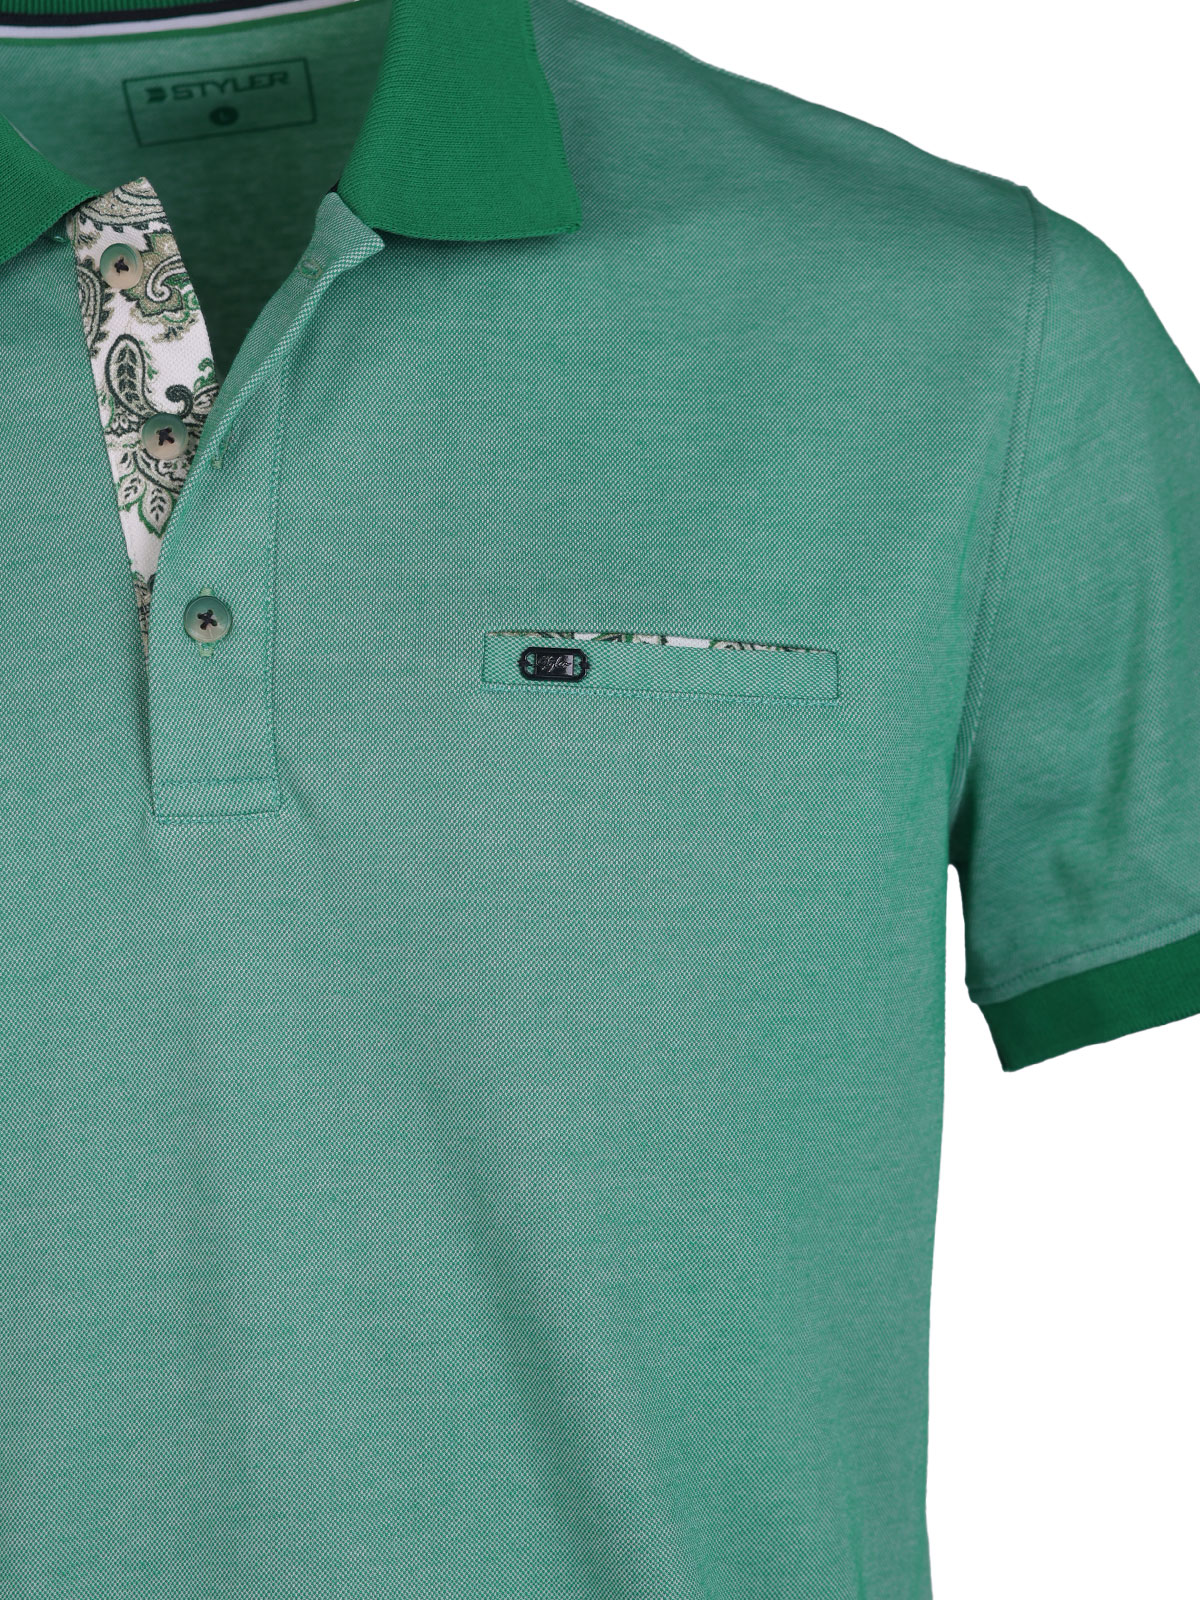 Ανδρικό tshirt σε πράσινο μελανζέ - 93453 € 38.81 img3